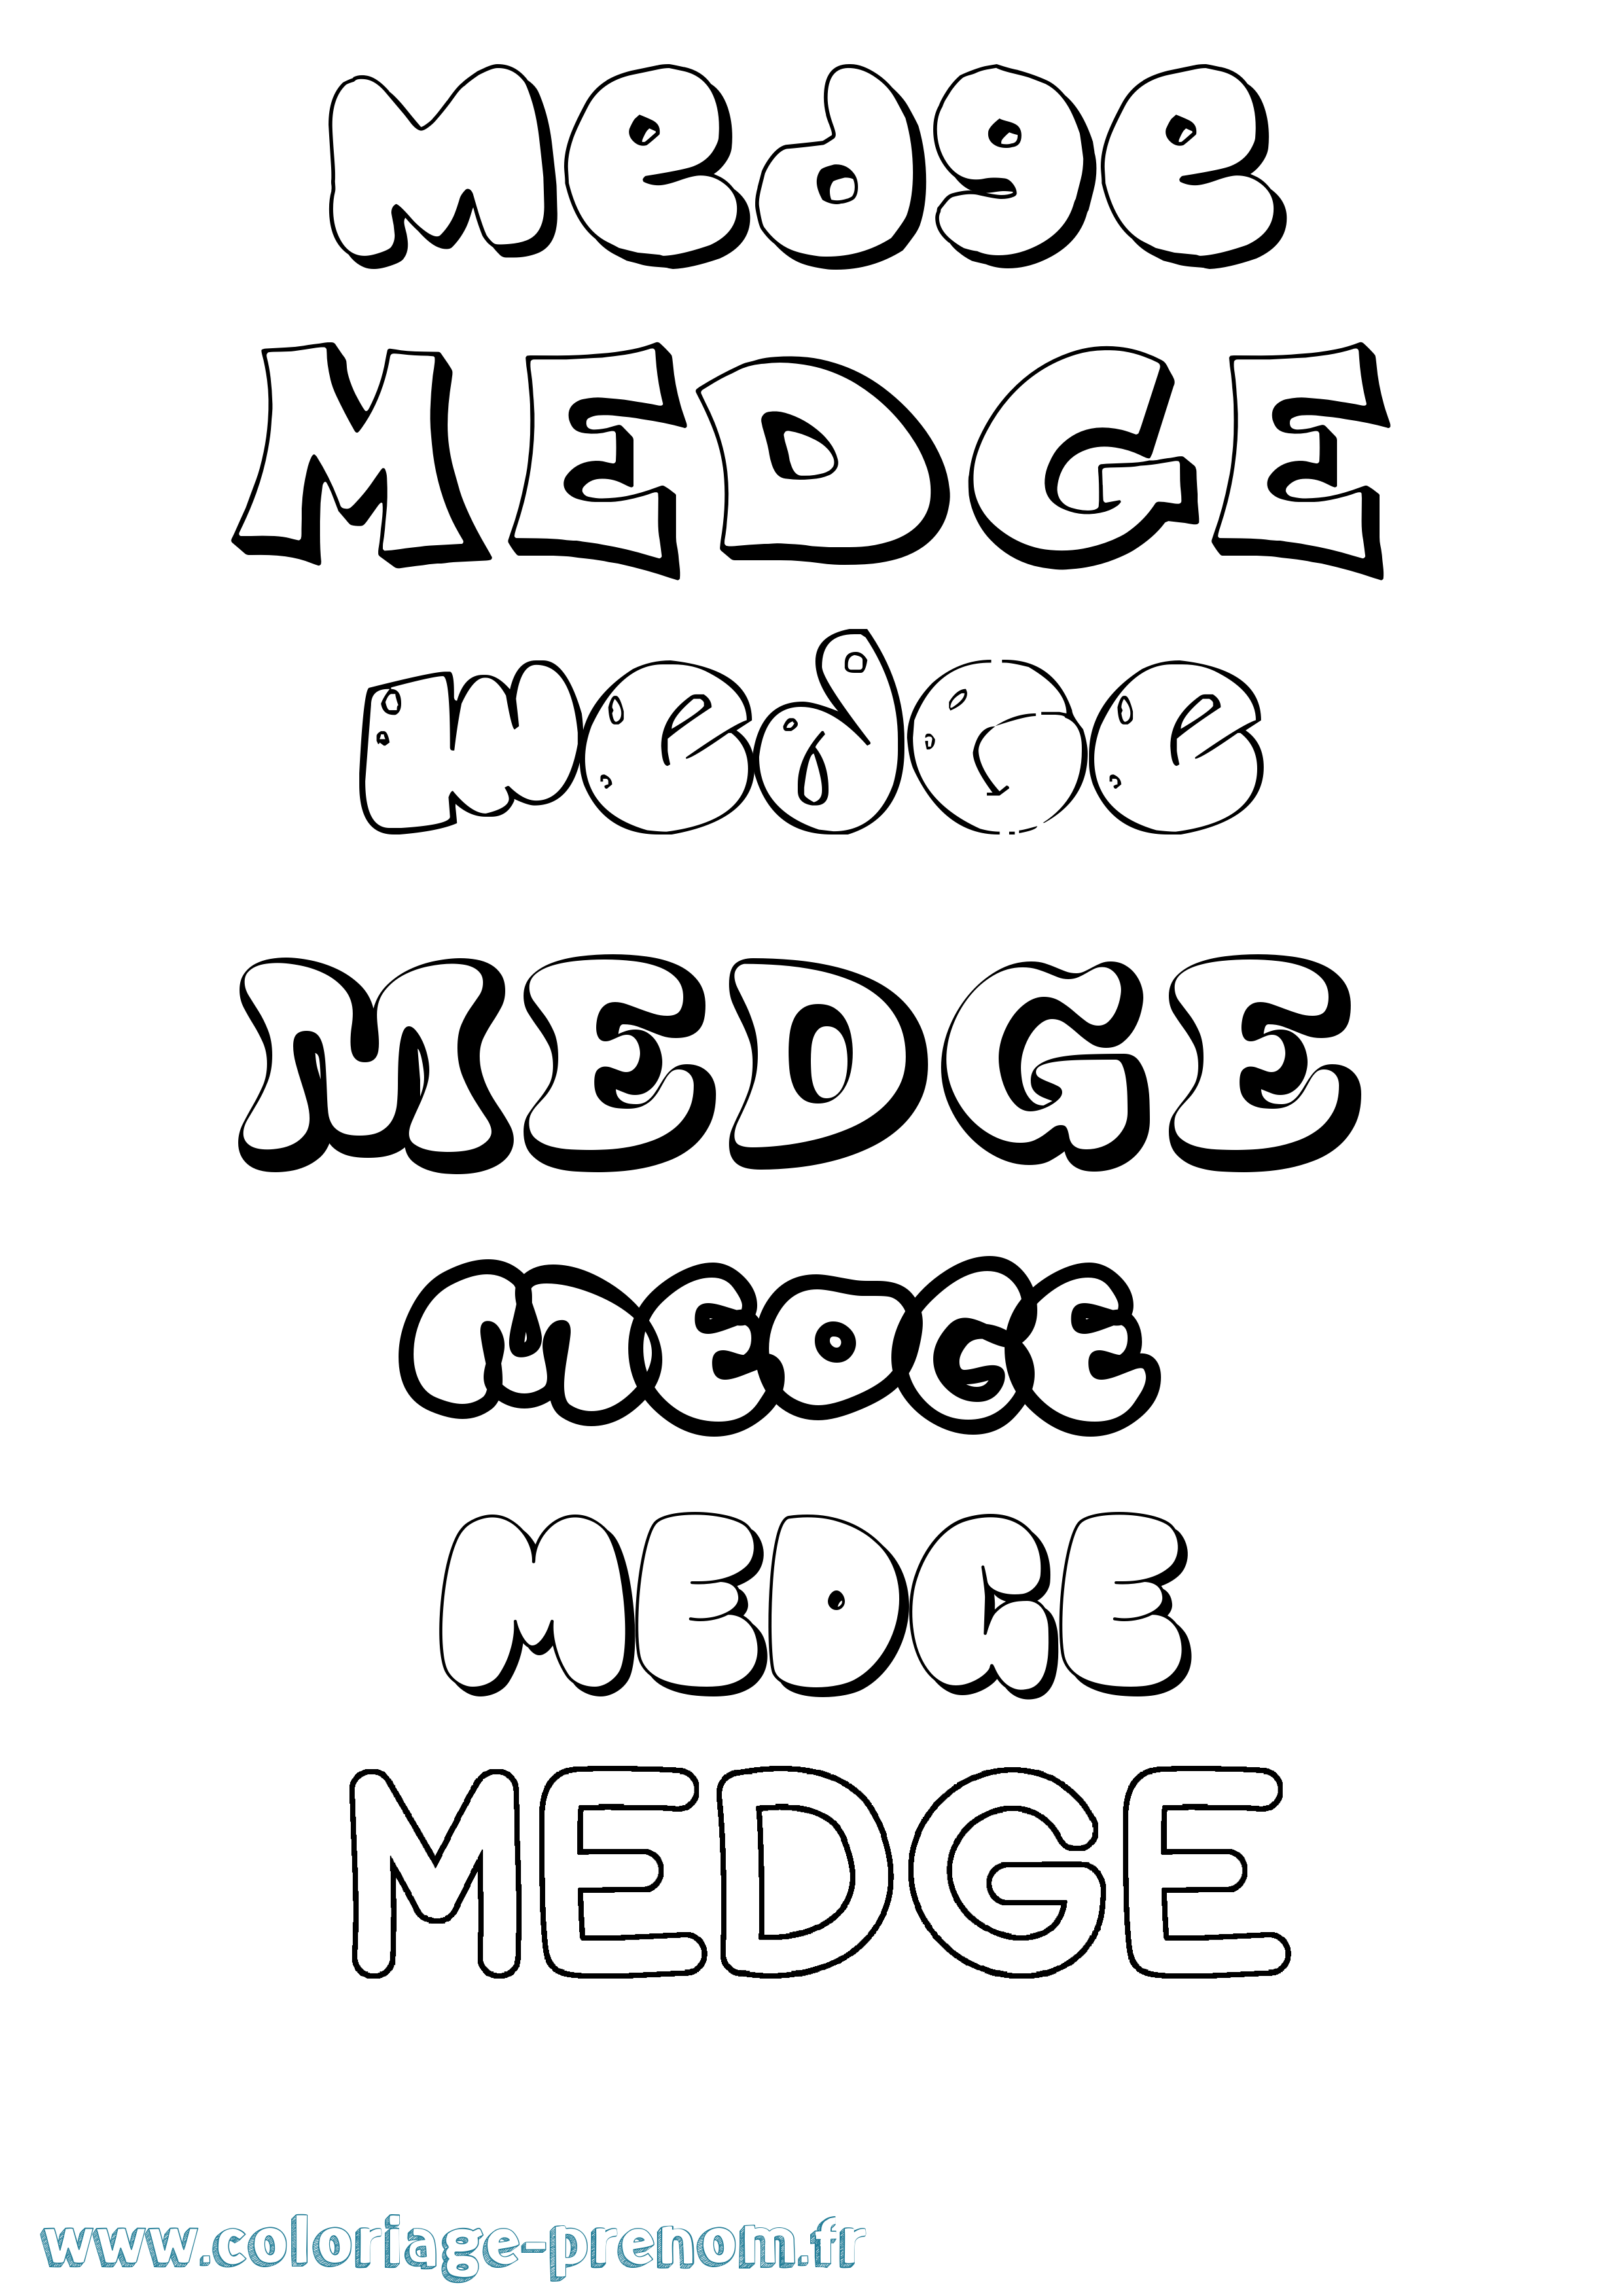 Coloriage prénom Medge Bubble